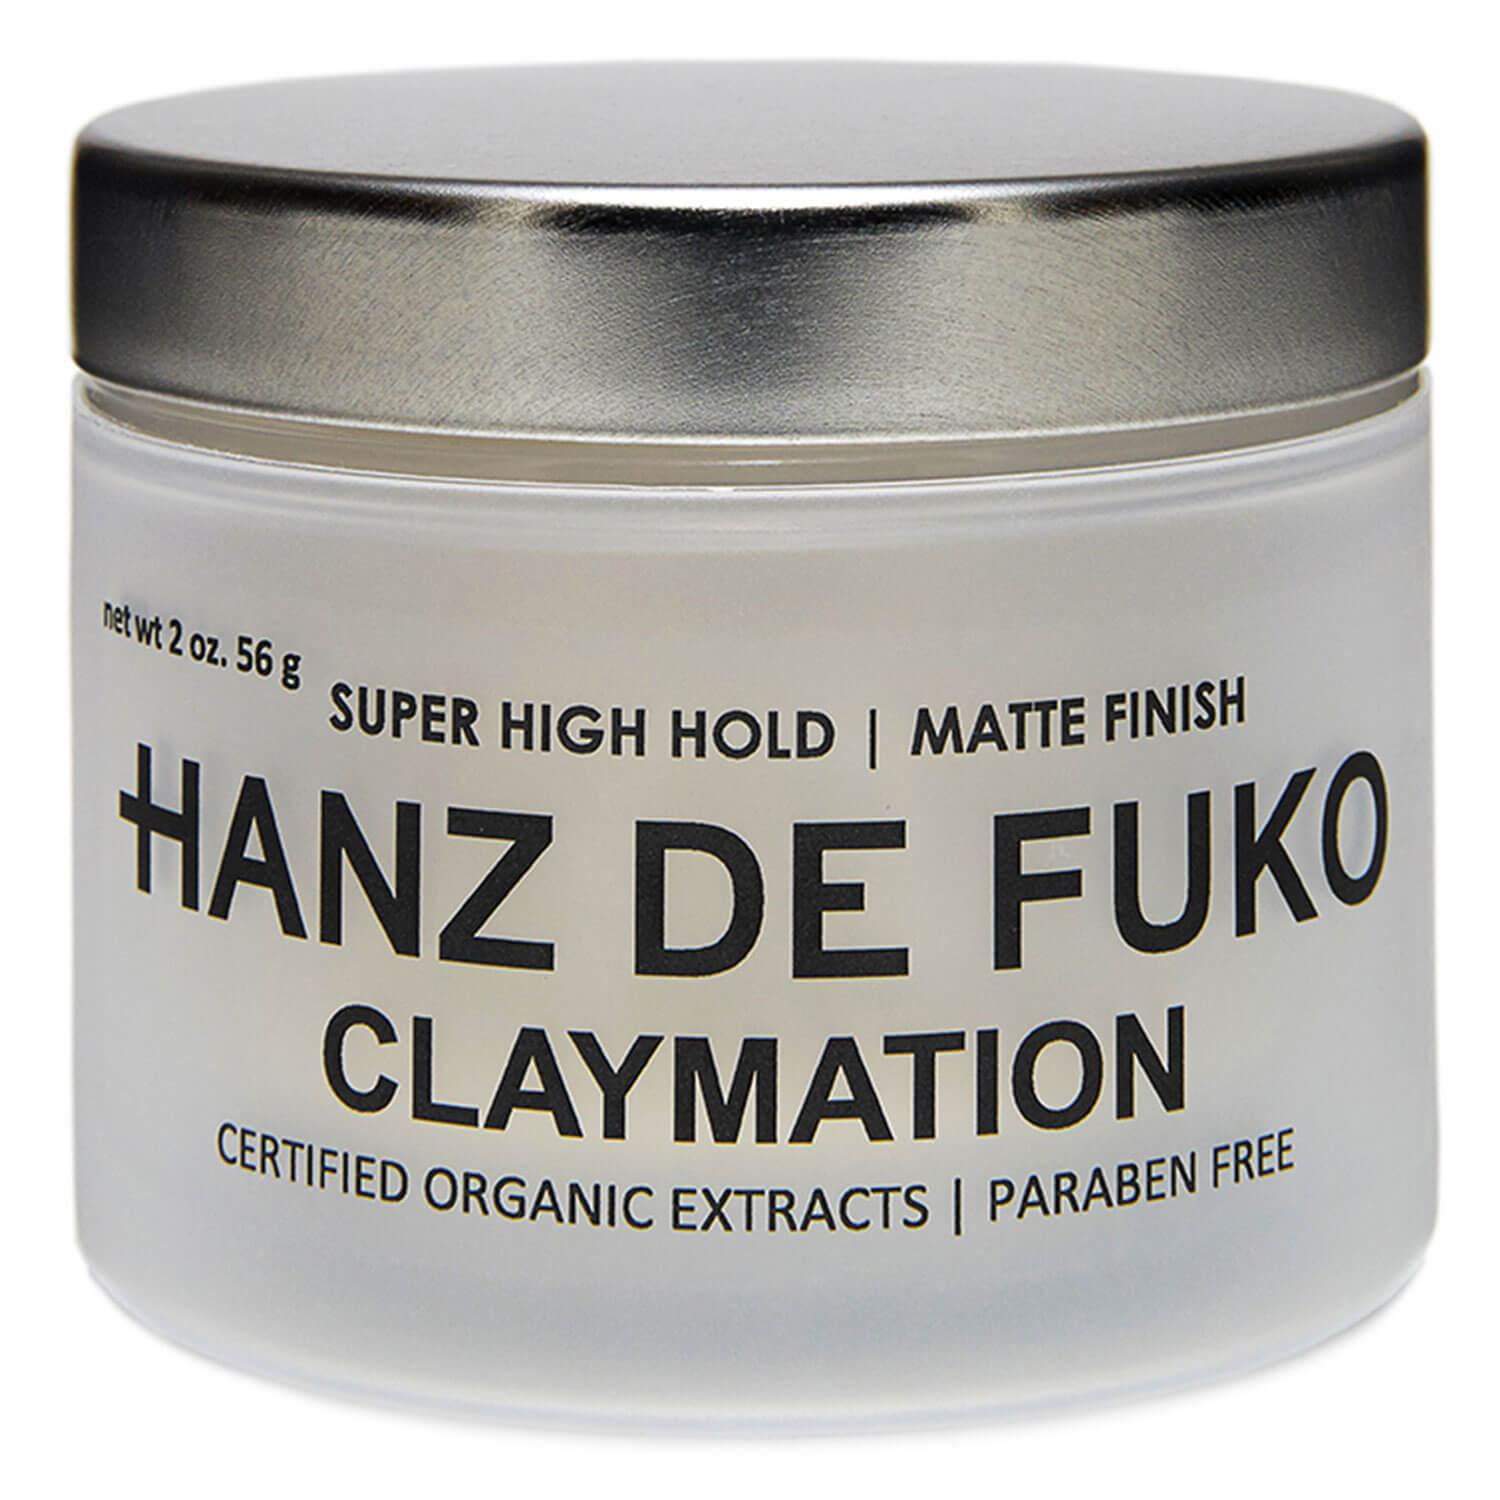 HANZ DE FUKO - Claymation